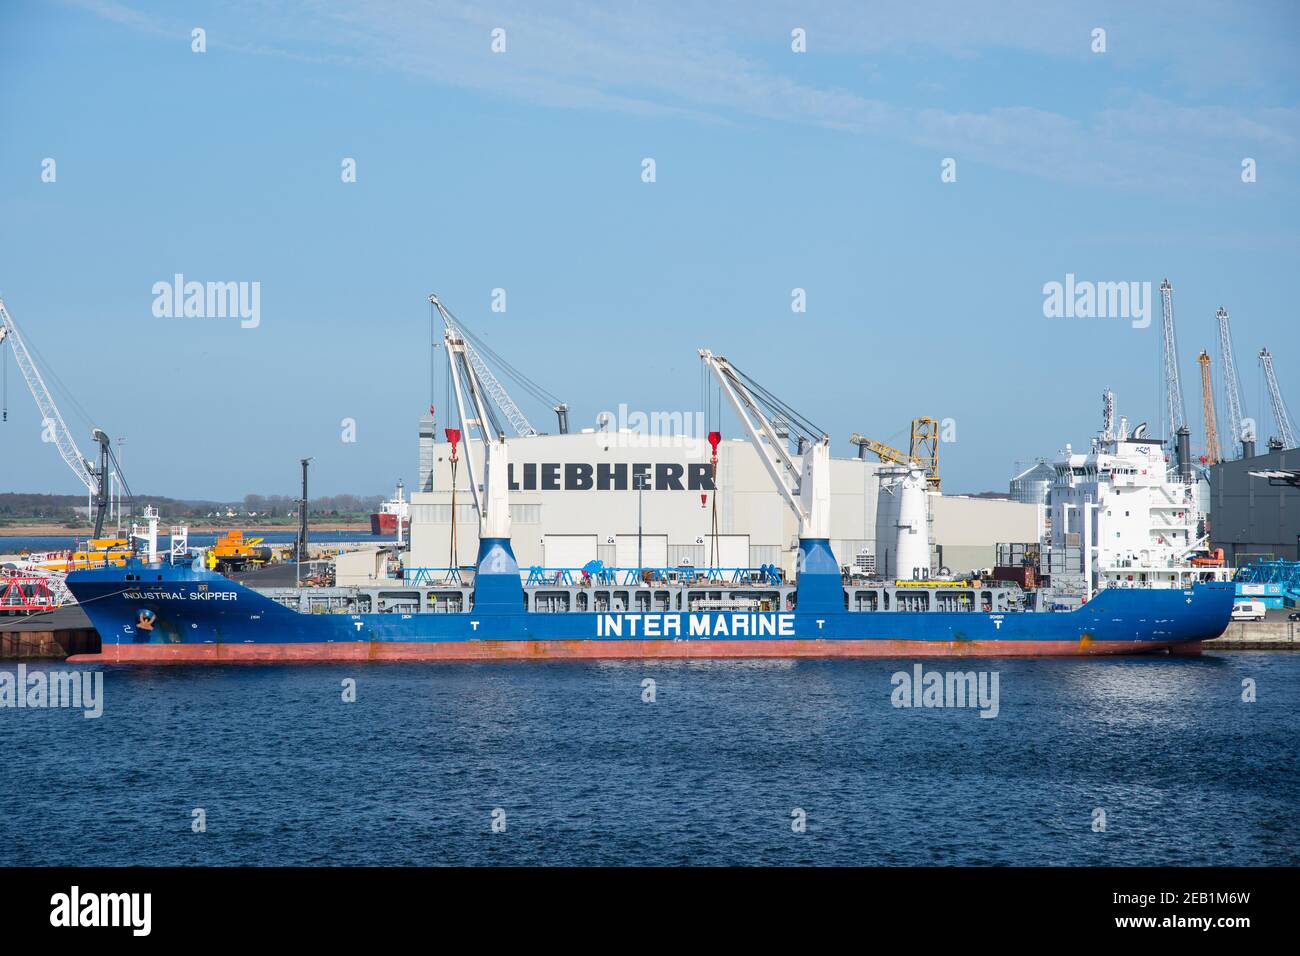 Rostock Germania - Aprile 22. 2018: Tweendecker cargo Vessel Industrial Skipper gru di carico presso la fabbrica di gru liebherr a Rostock Foto Stock